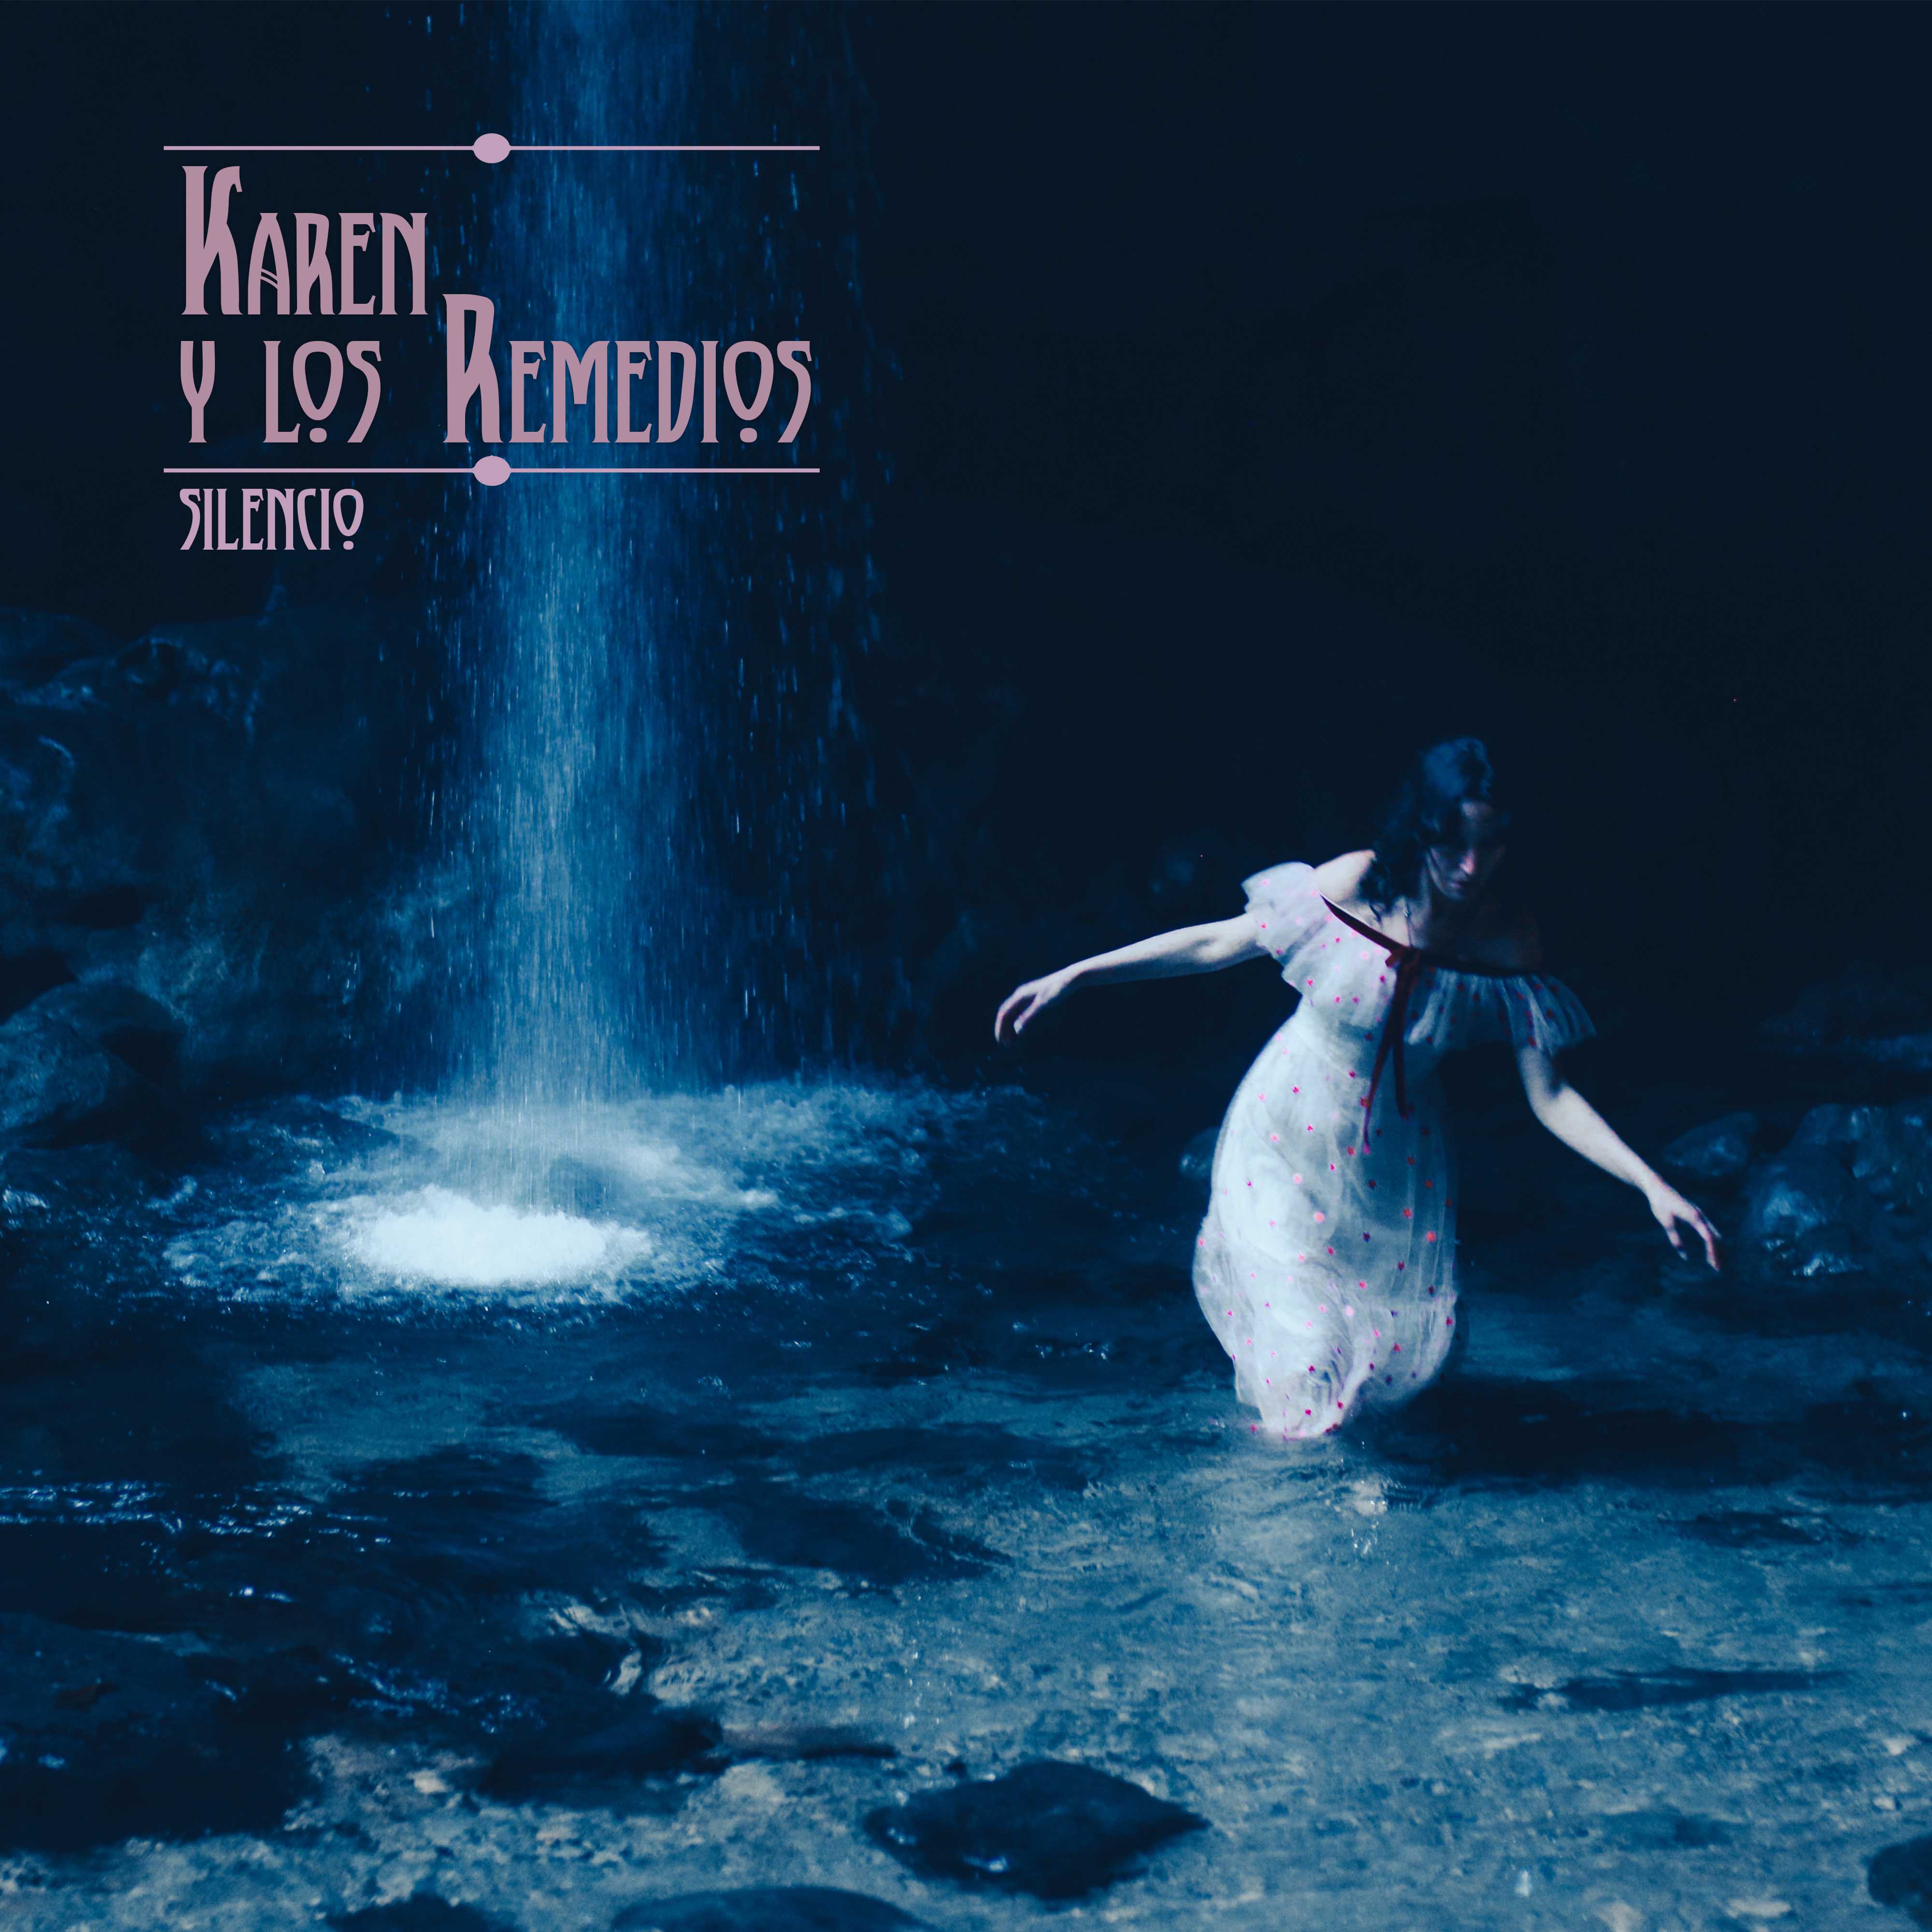 Karen y Los Remedios - SIlencio - Out Now!